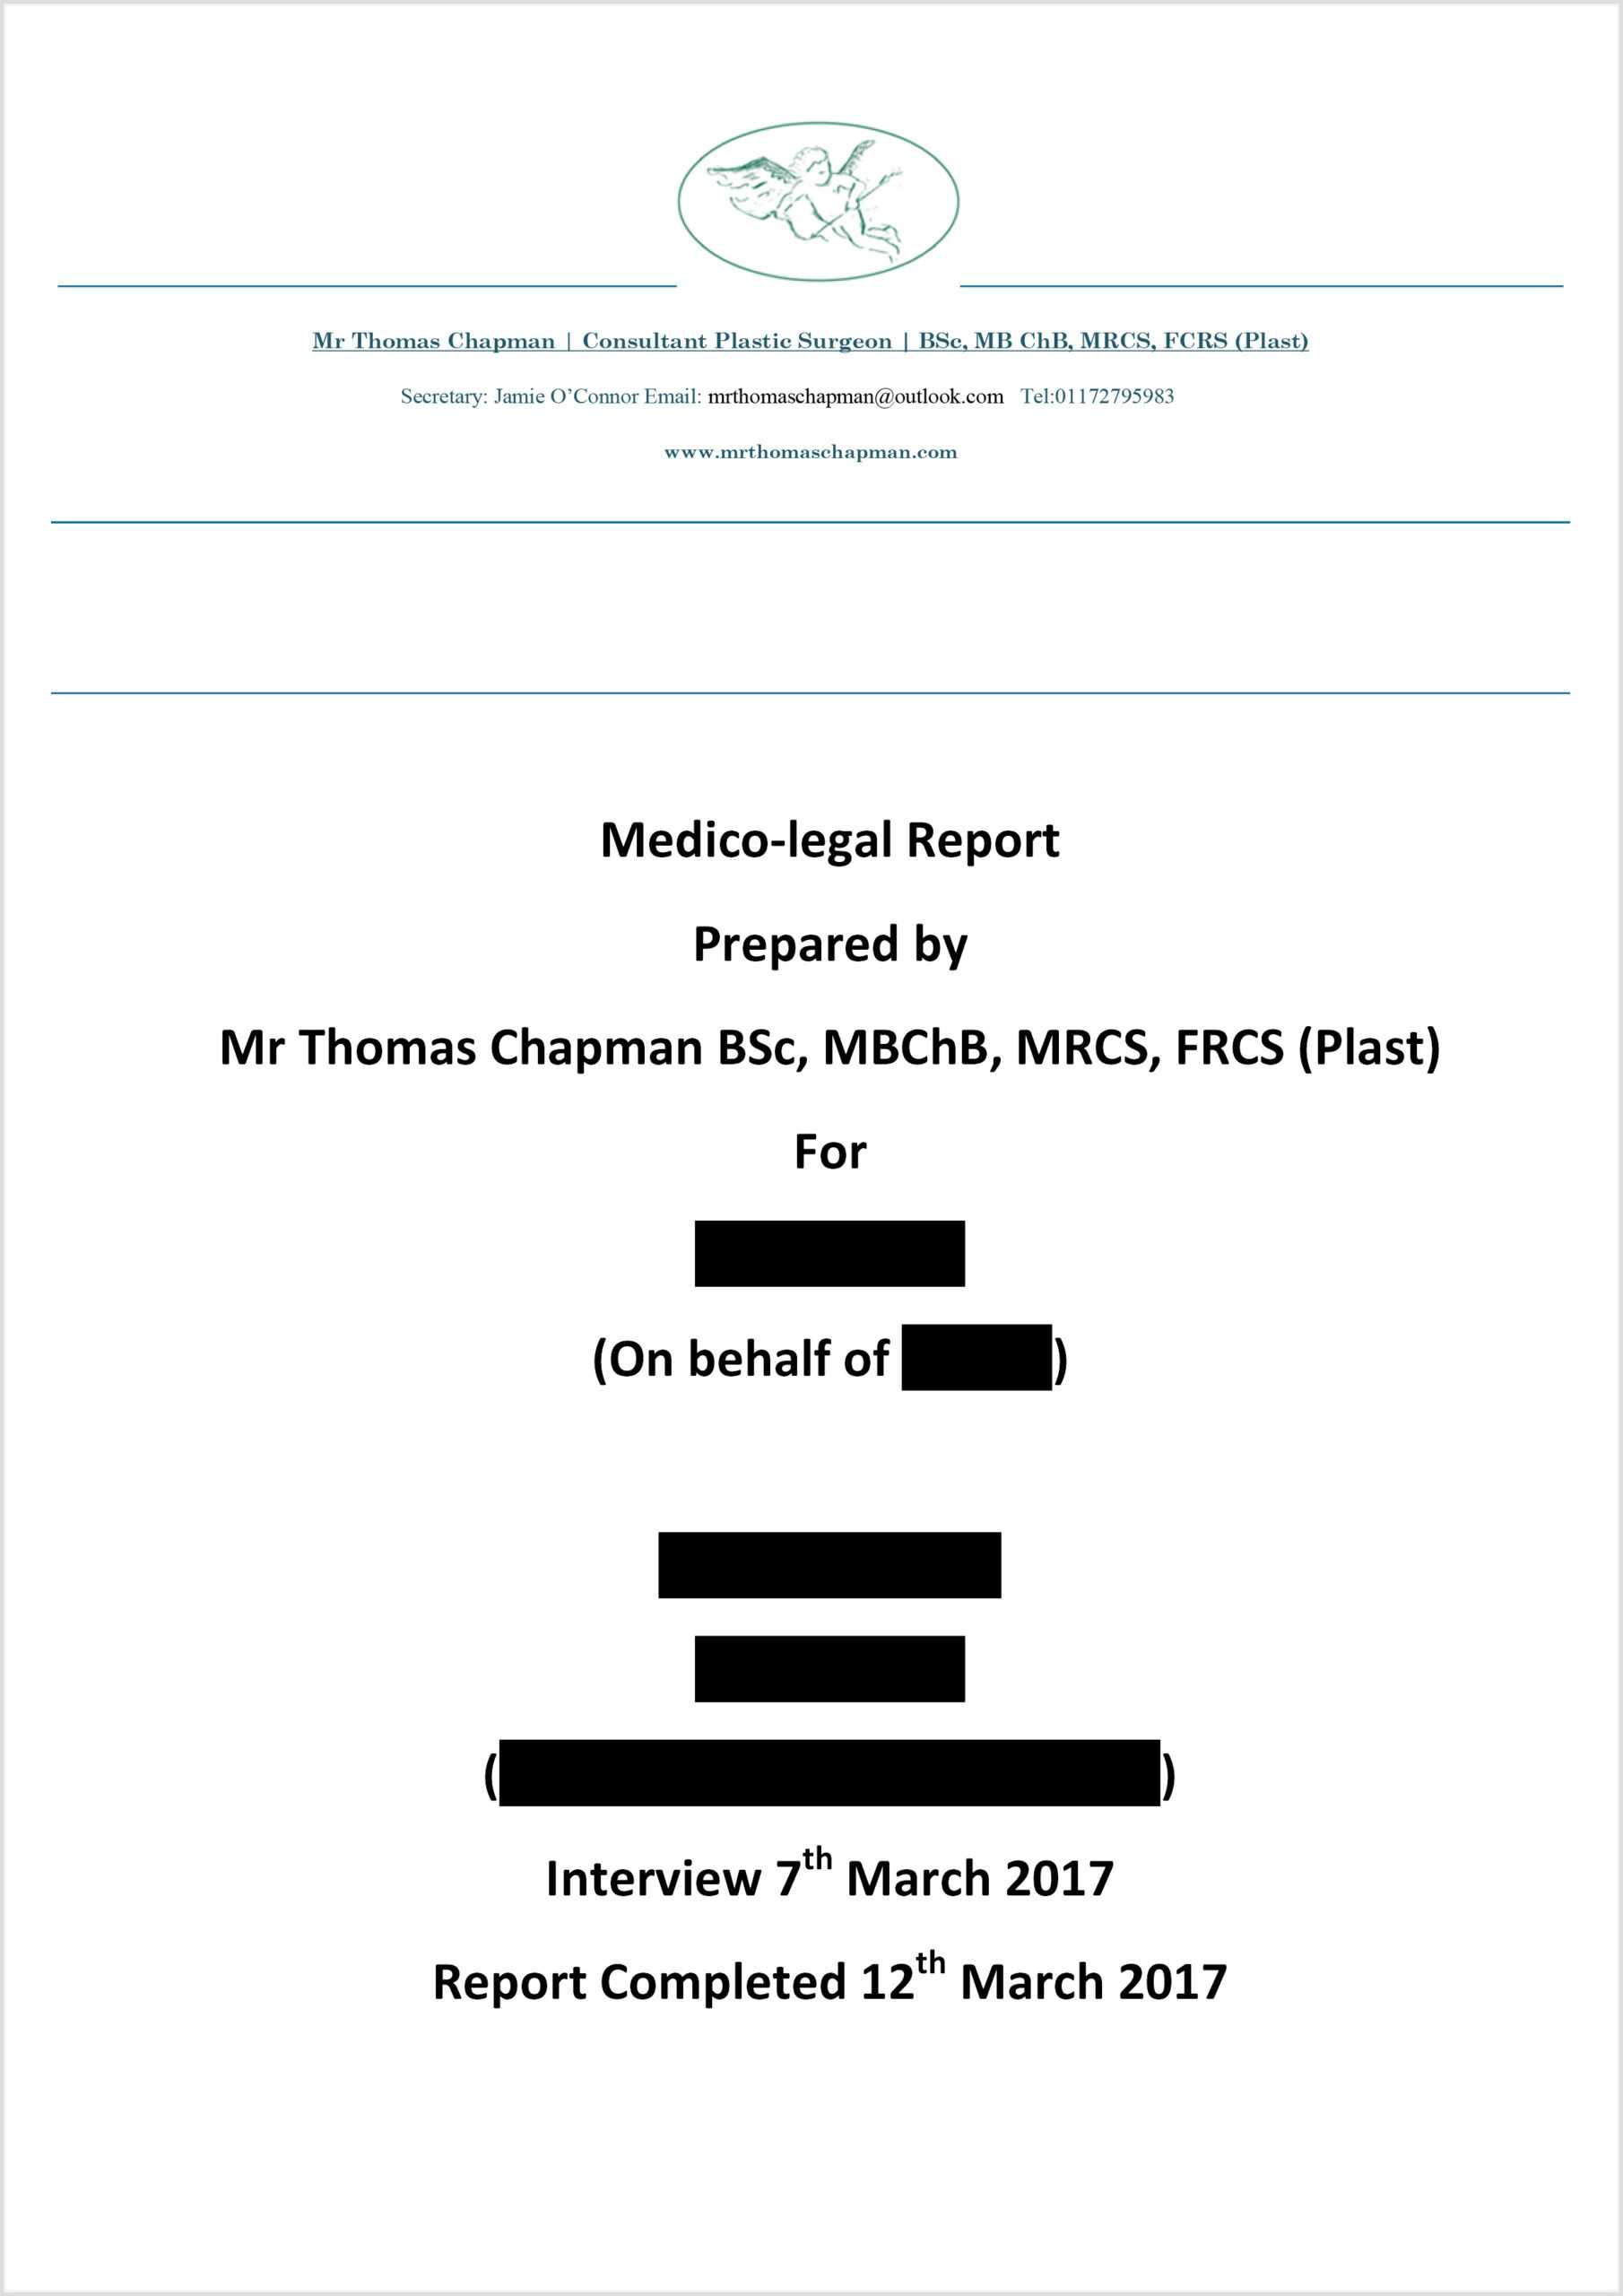 Medicolegal Reporting – Mr Thomas Chapman In Medical Legal Report Template